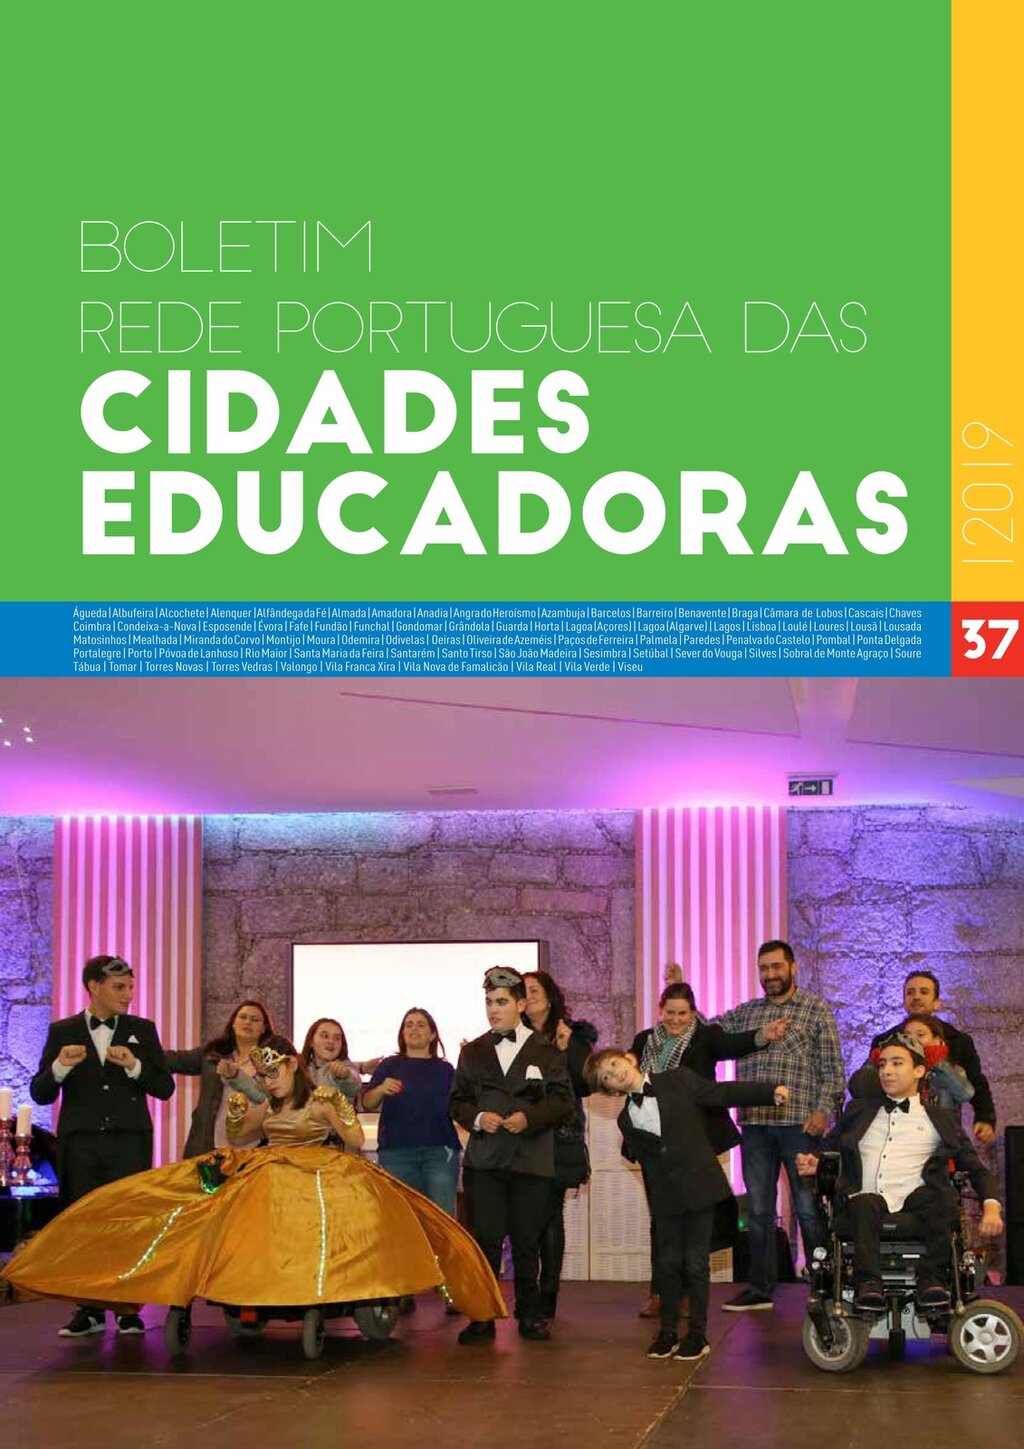 Boletim - Rede portuguesa das cidades educadoras